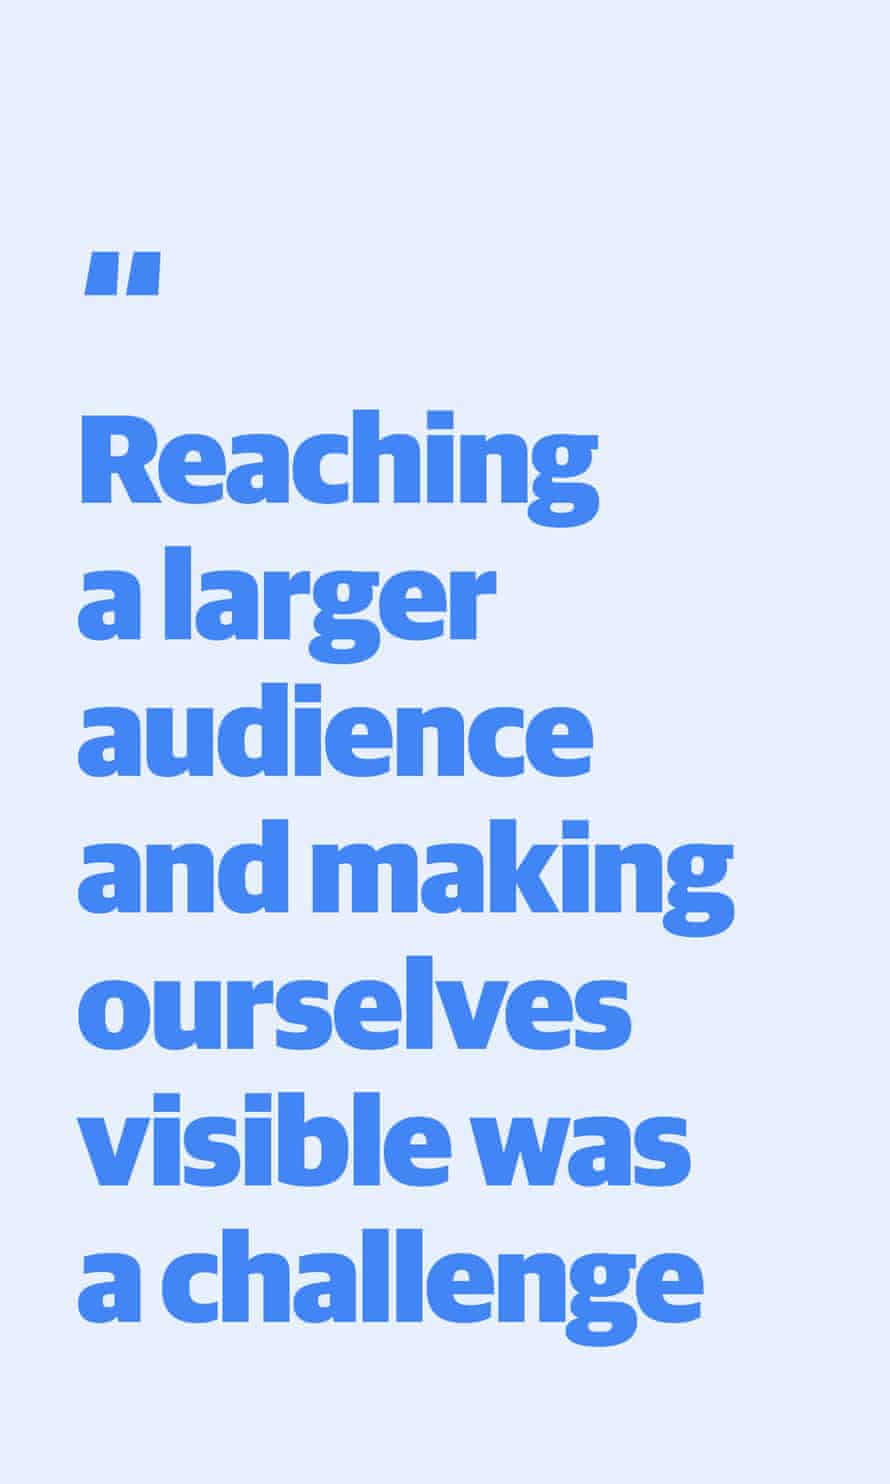 Zitieren: "Ein größeres Publikum zu erreichen und uns sichtbar zu machen war eine Herausforderung."